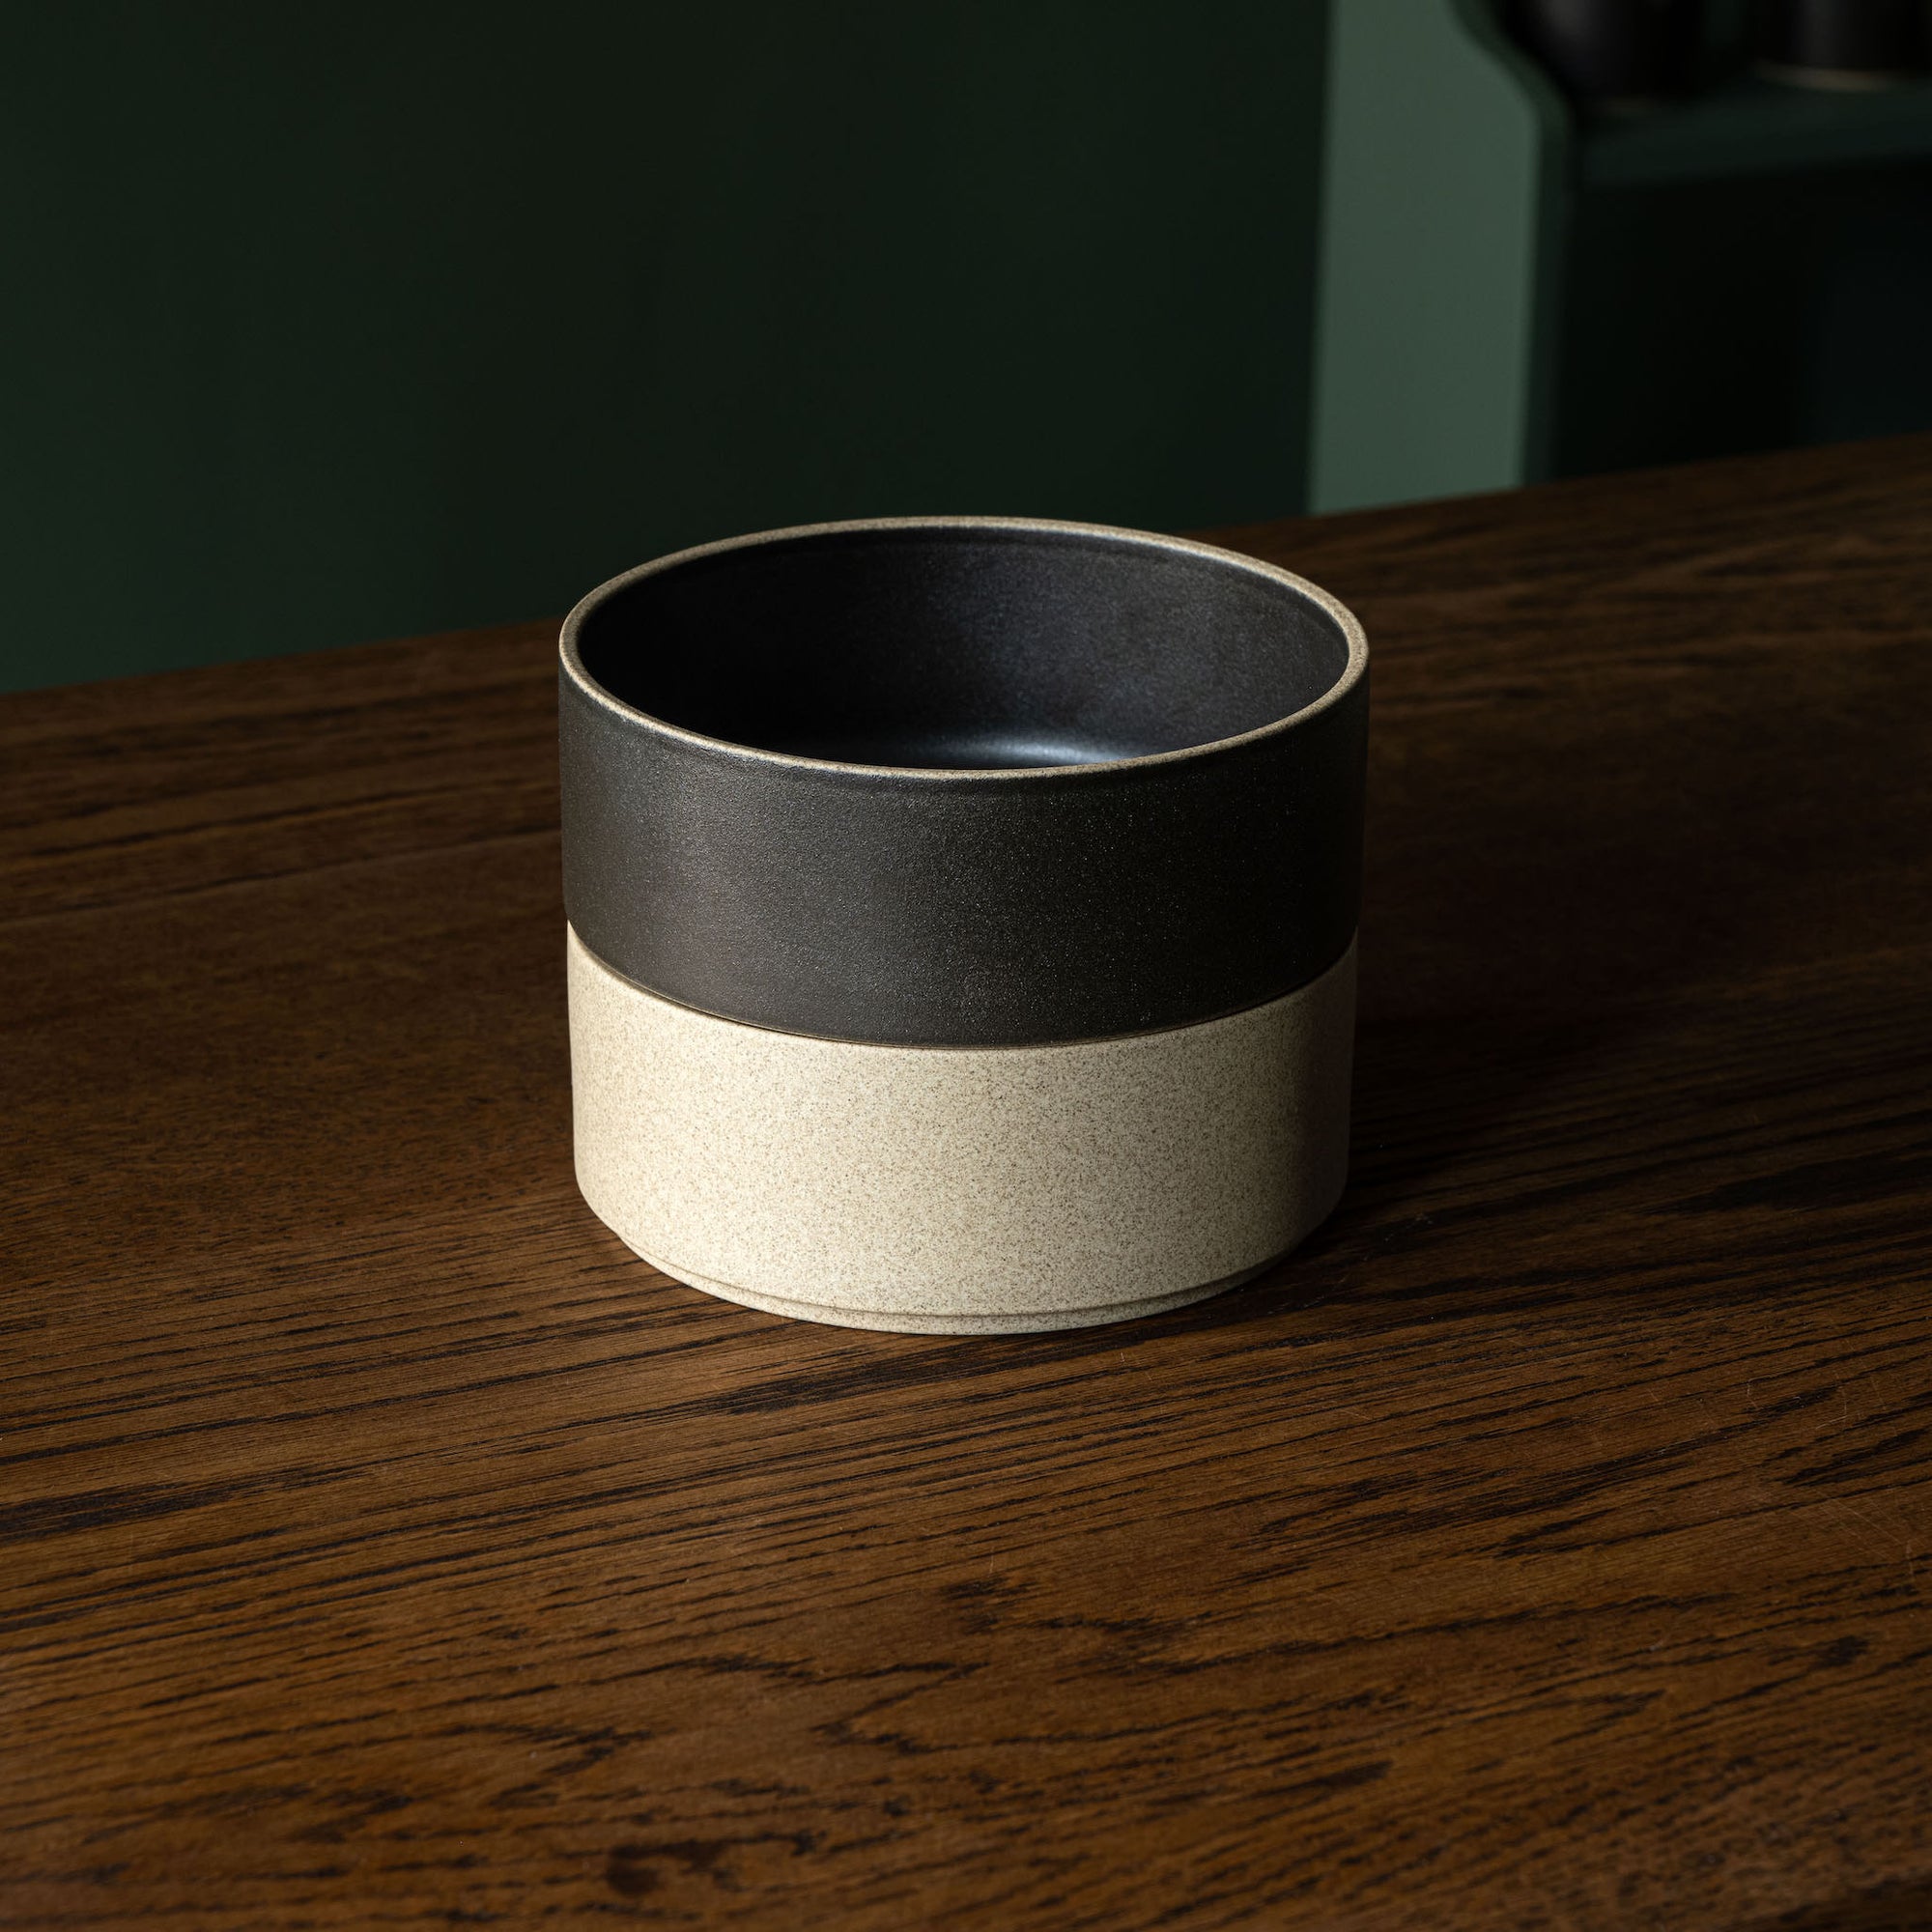 Hasami Porcelain black & natural stacked bowls